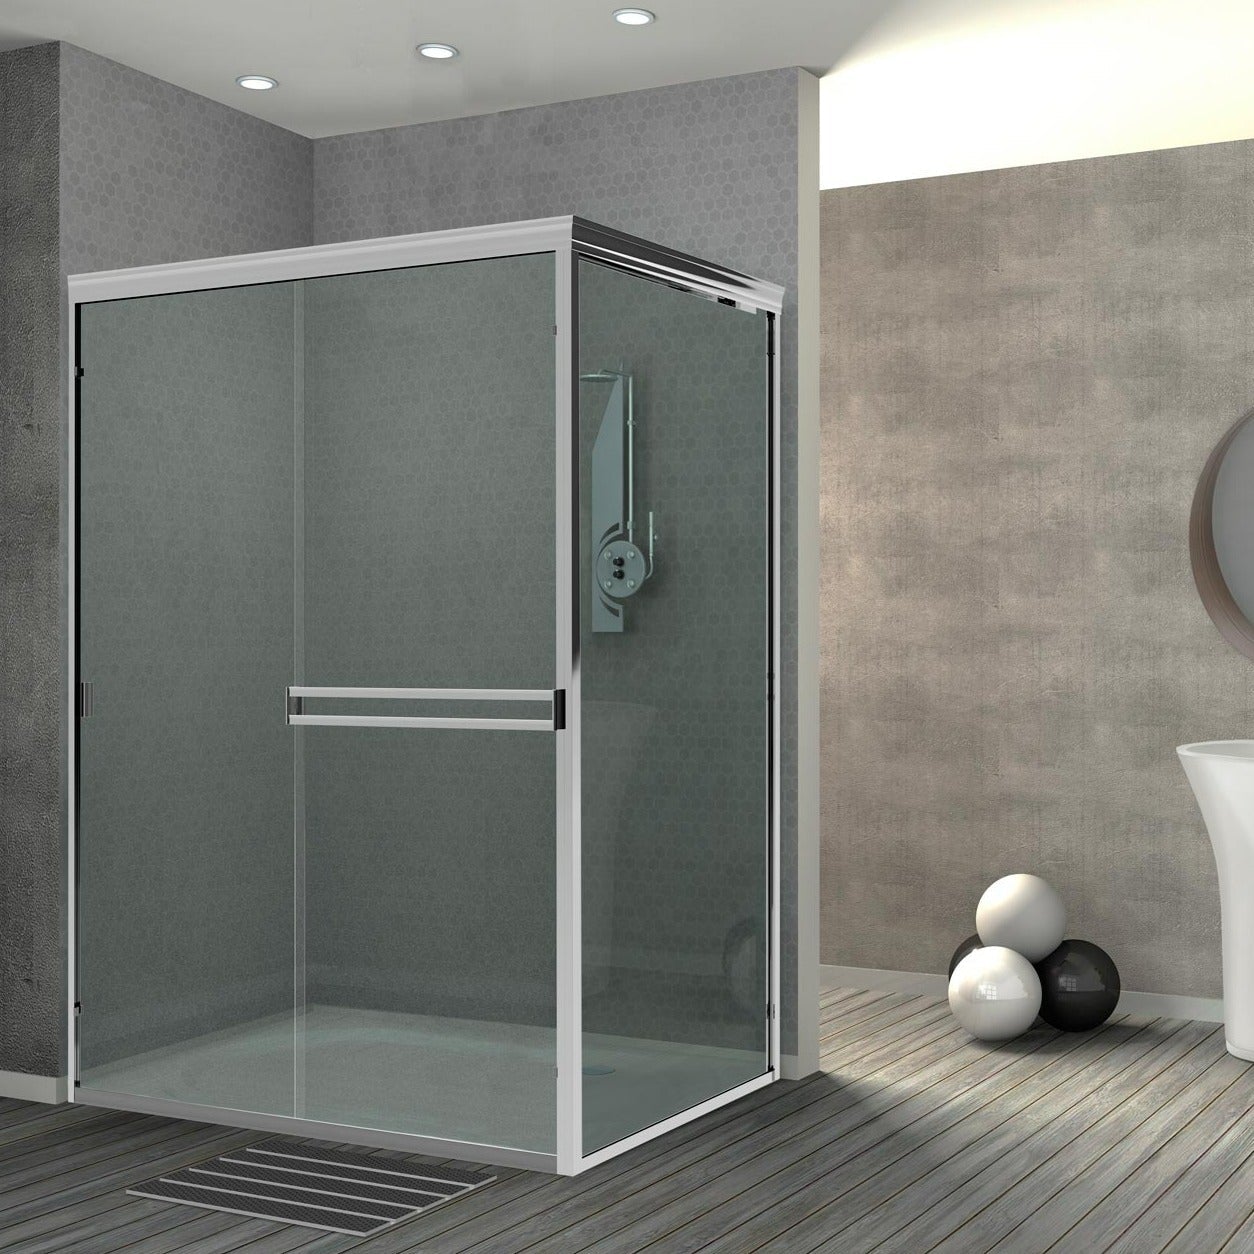 Holcam Distinctive semi-frameless sliding shower door